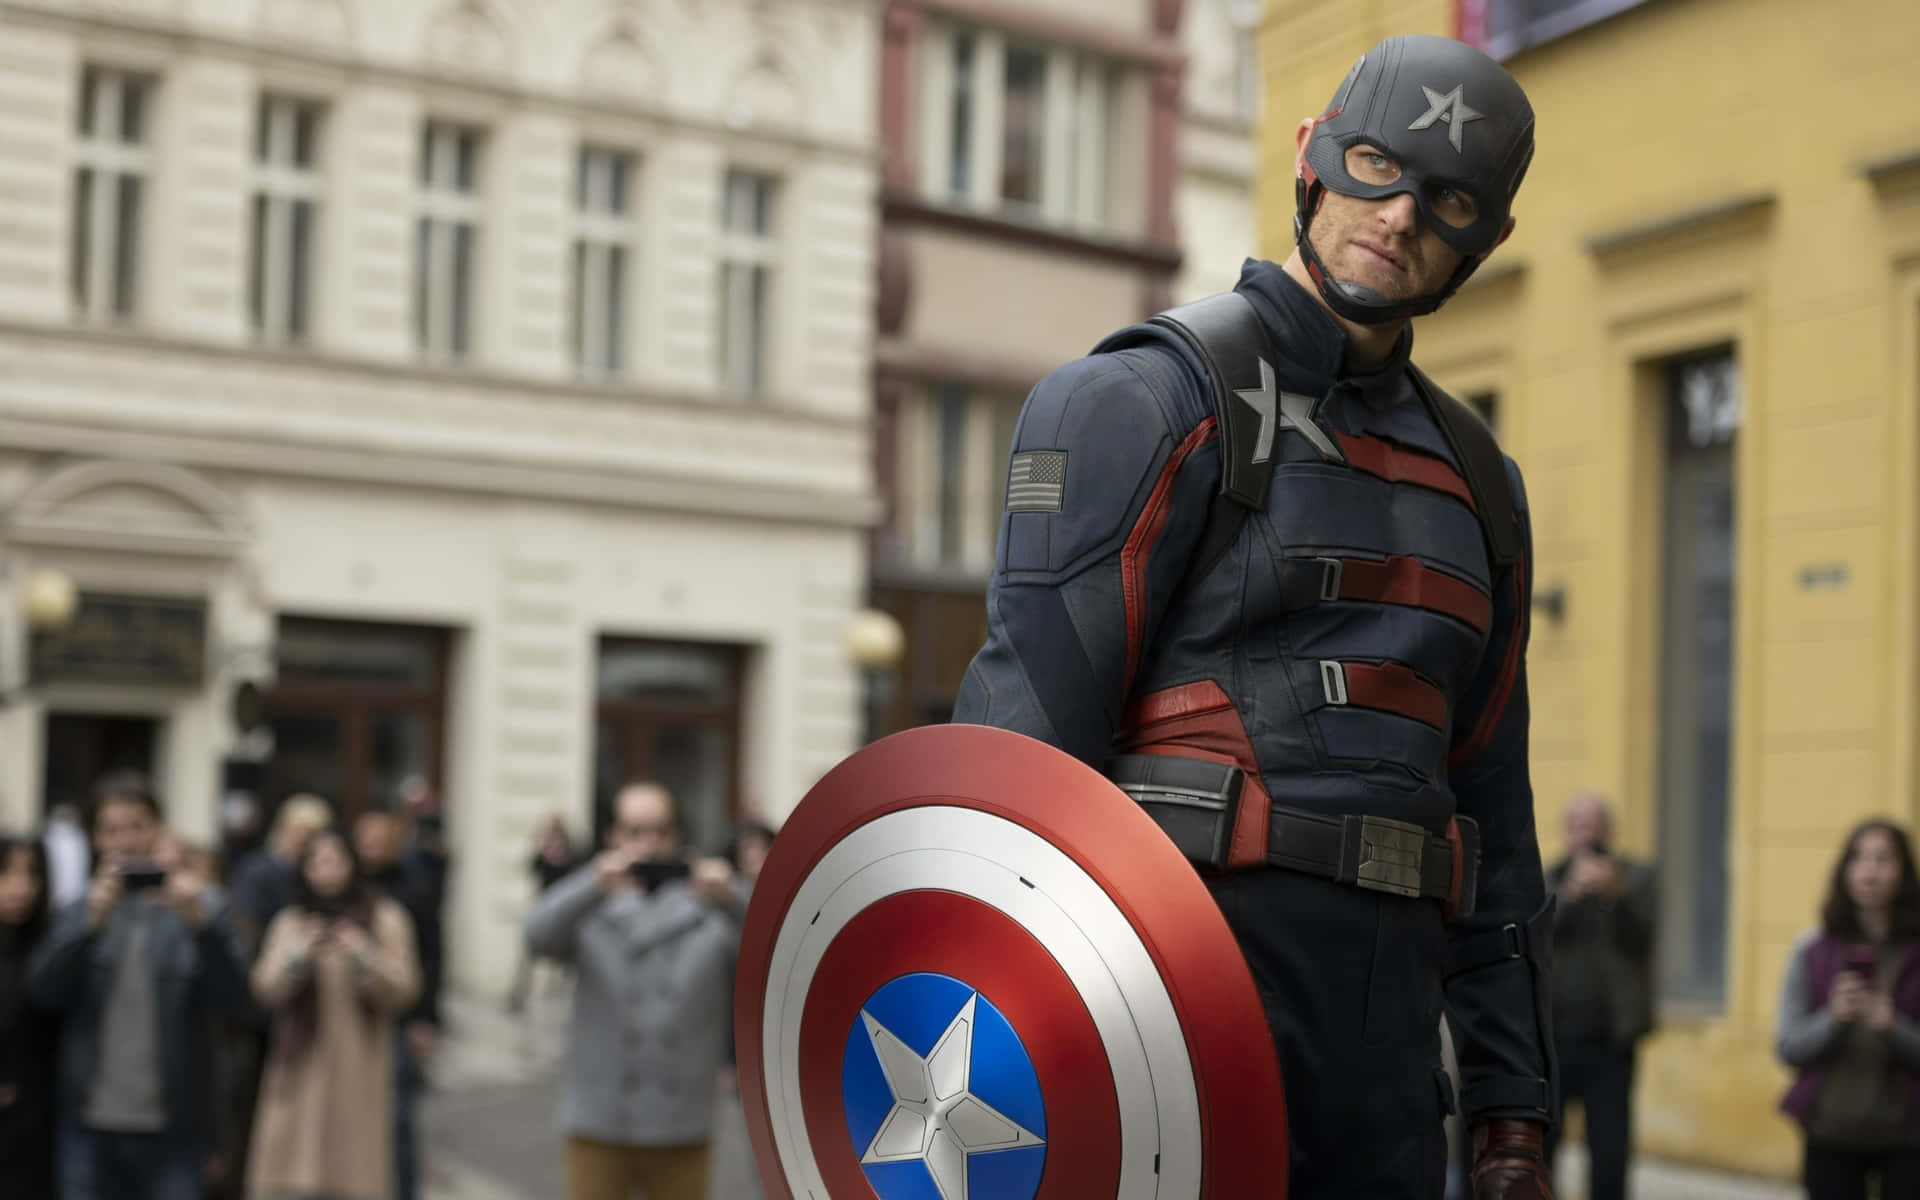 Marvelsheltemod På Sit Bedste - Captain America: The First Avenger Wallpaper